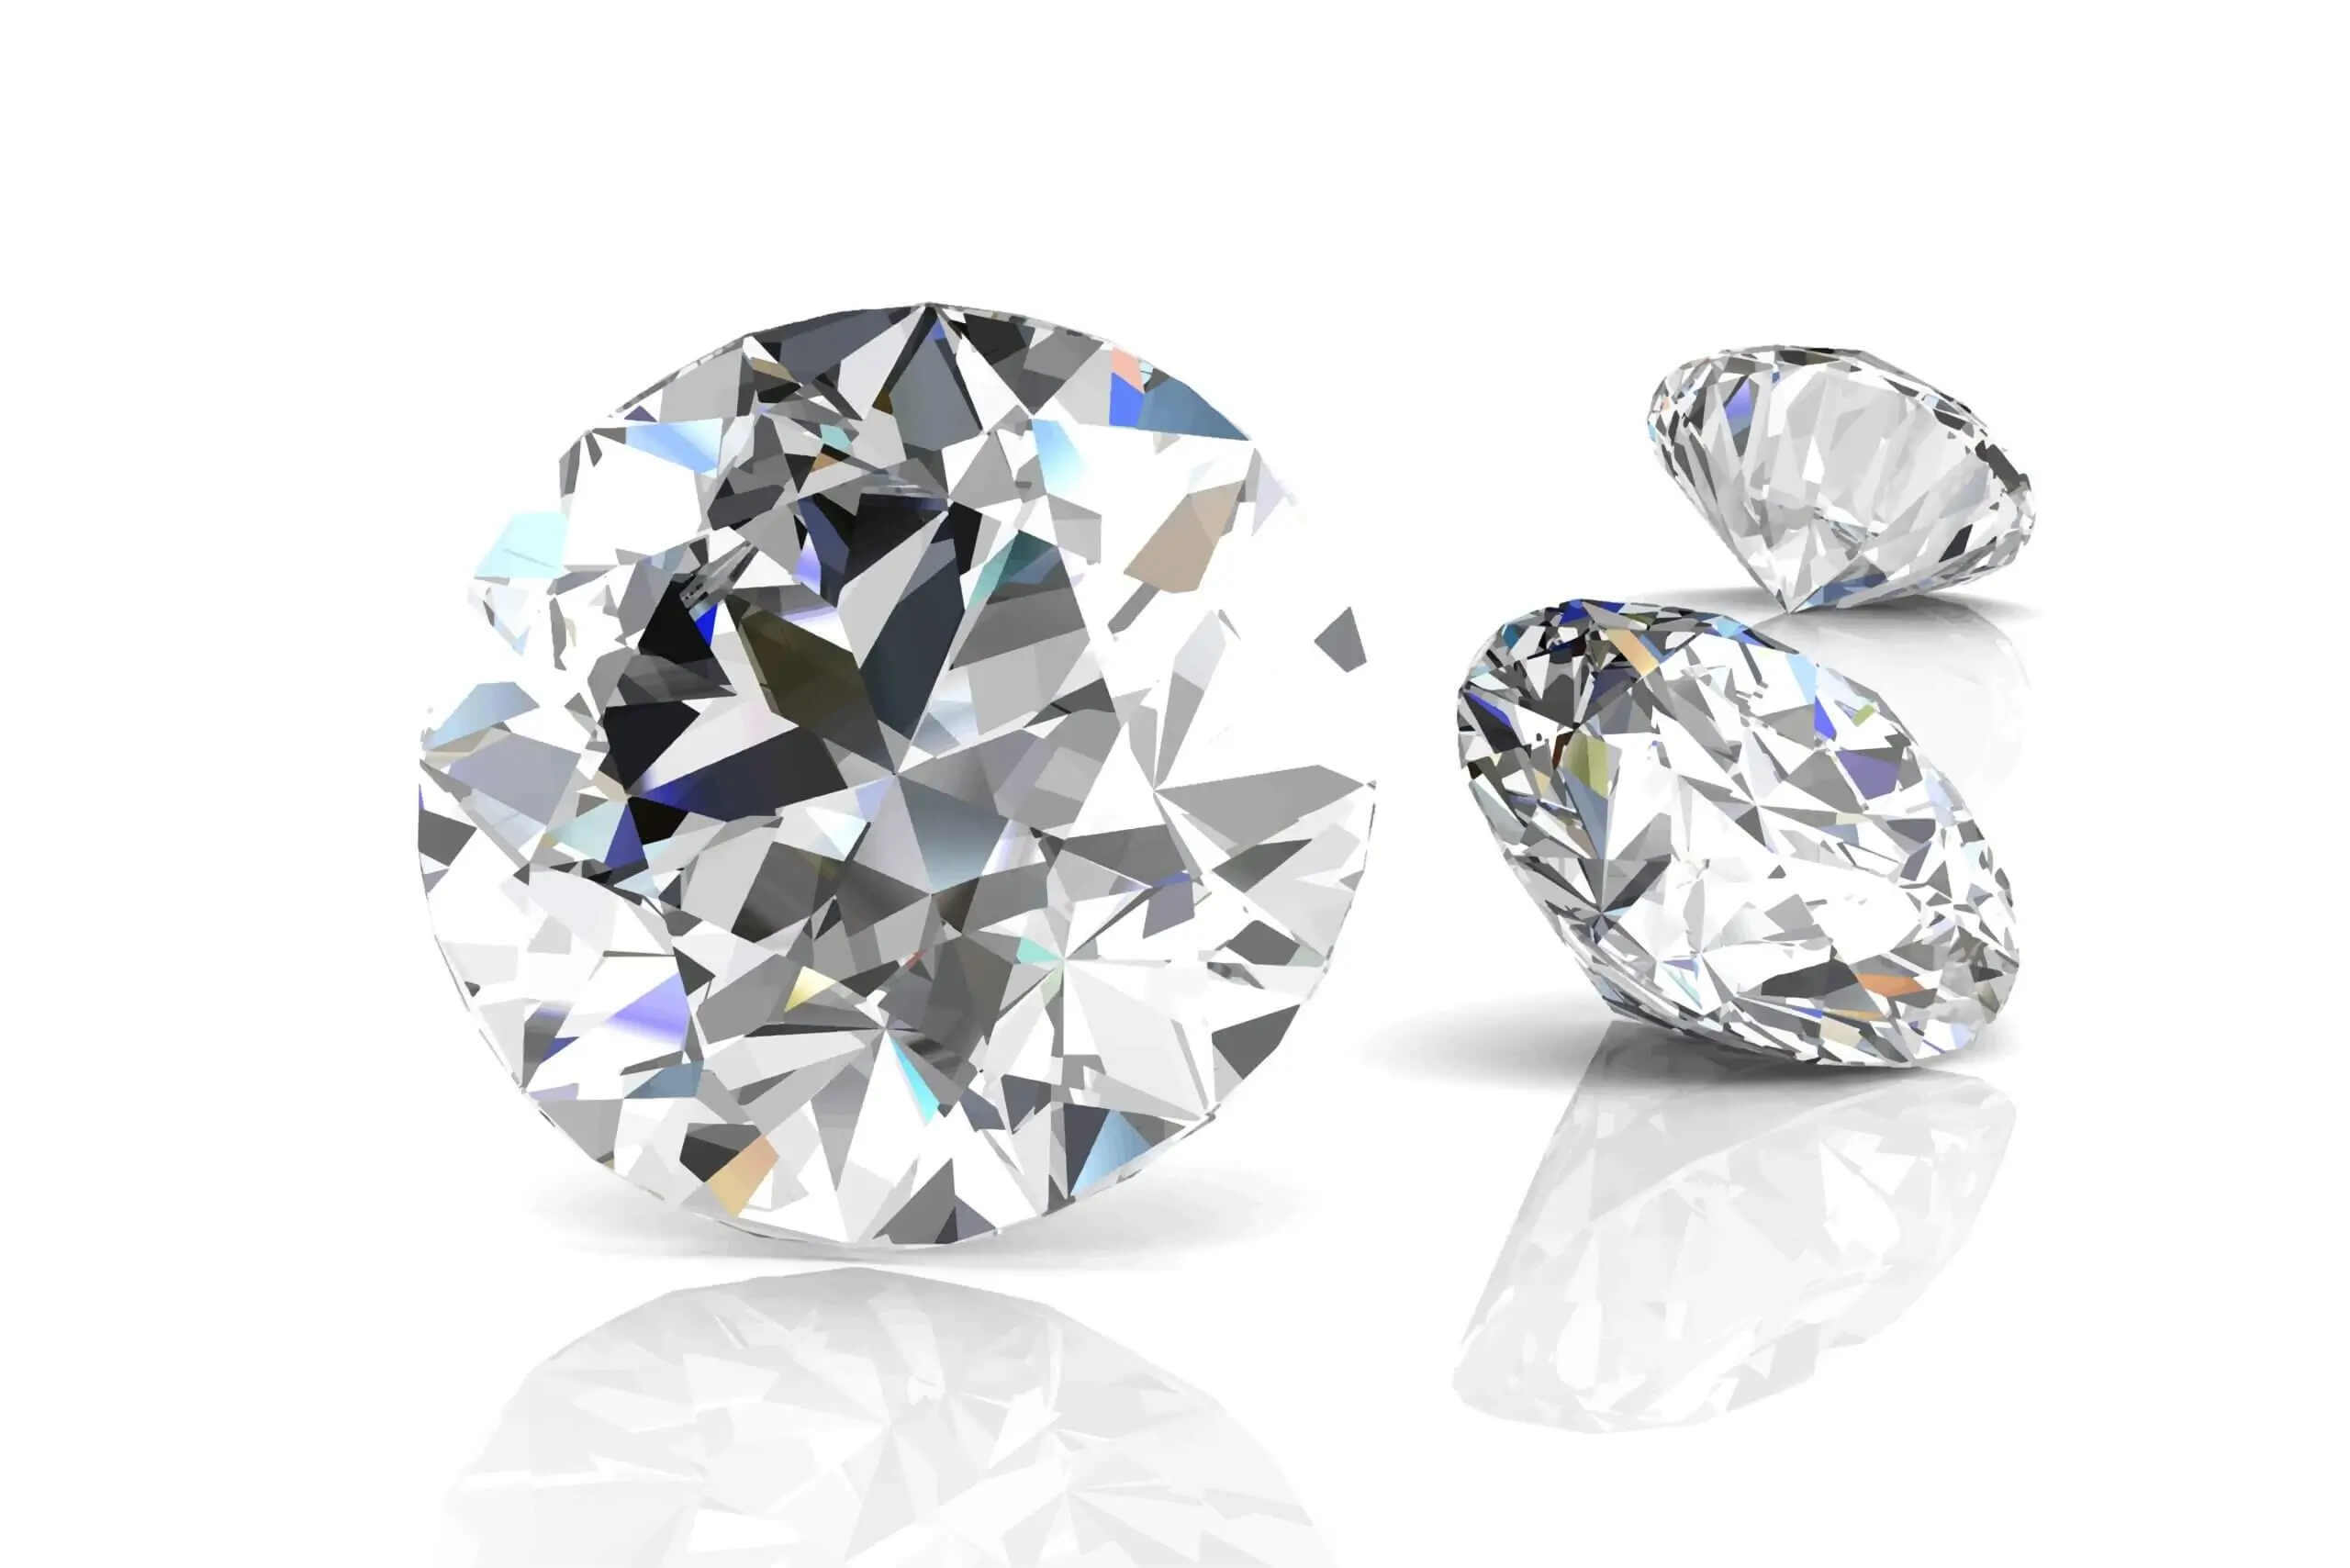 Quotazione dei diamanti: cosa bisogna sapere